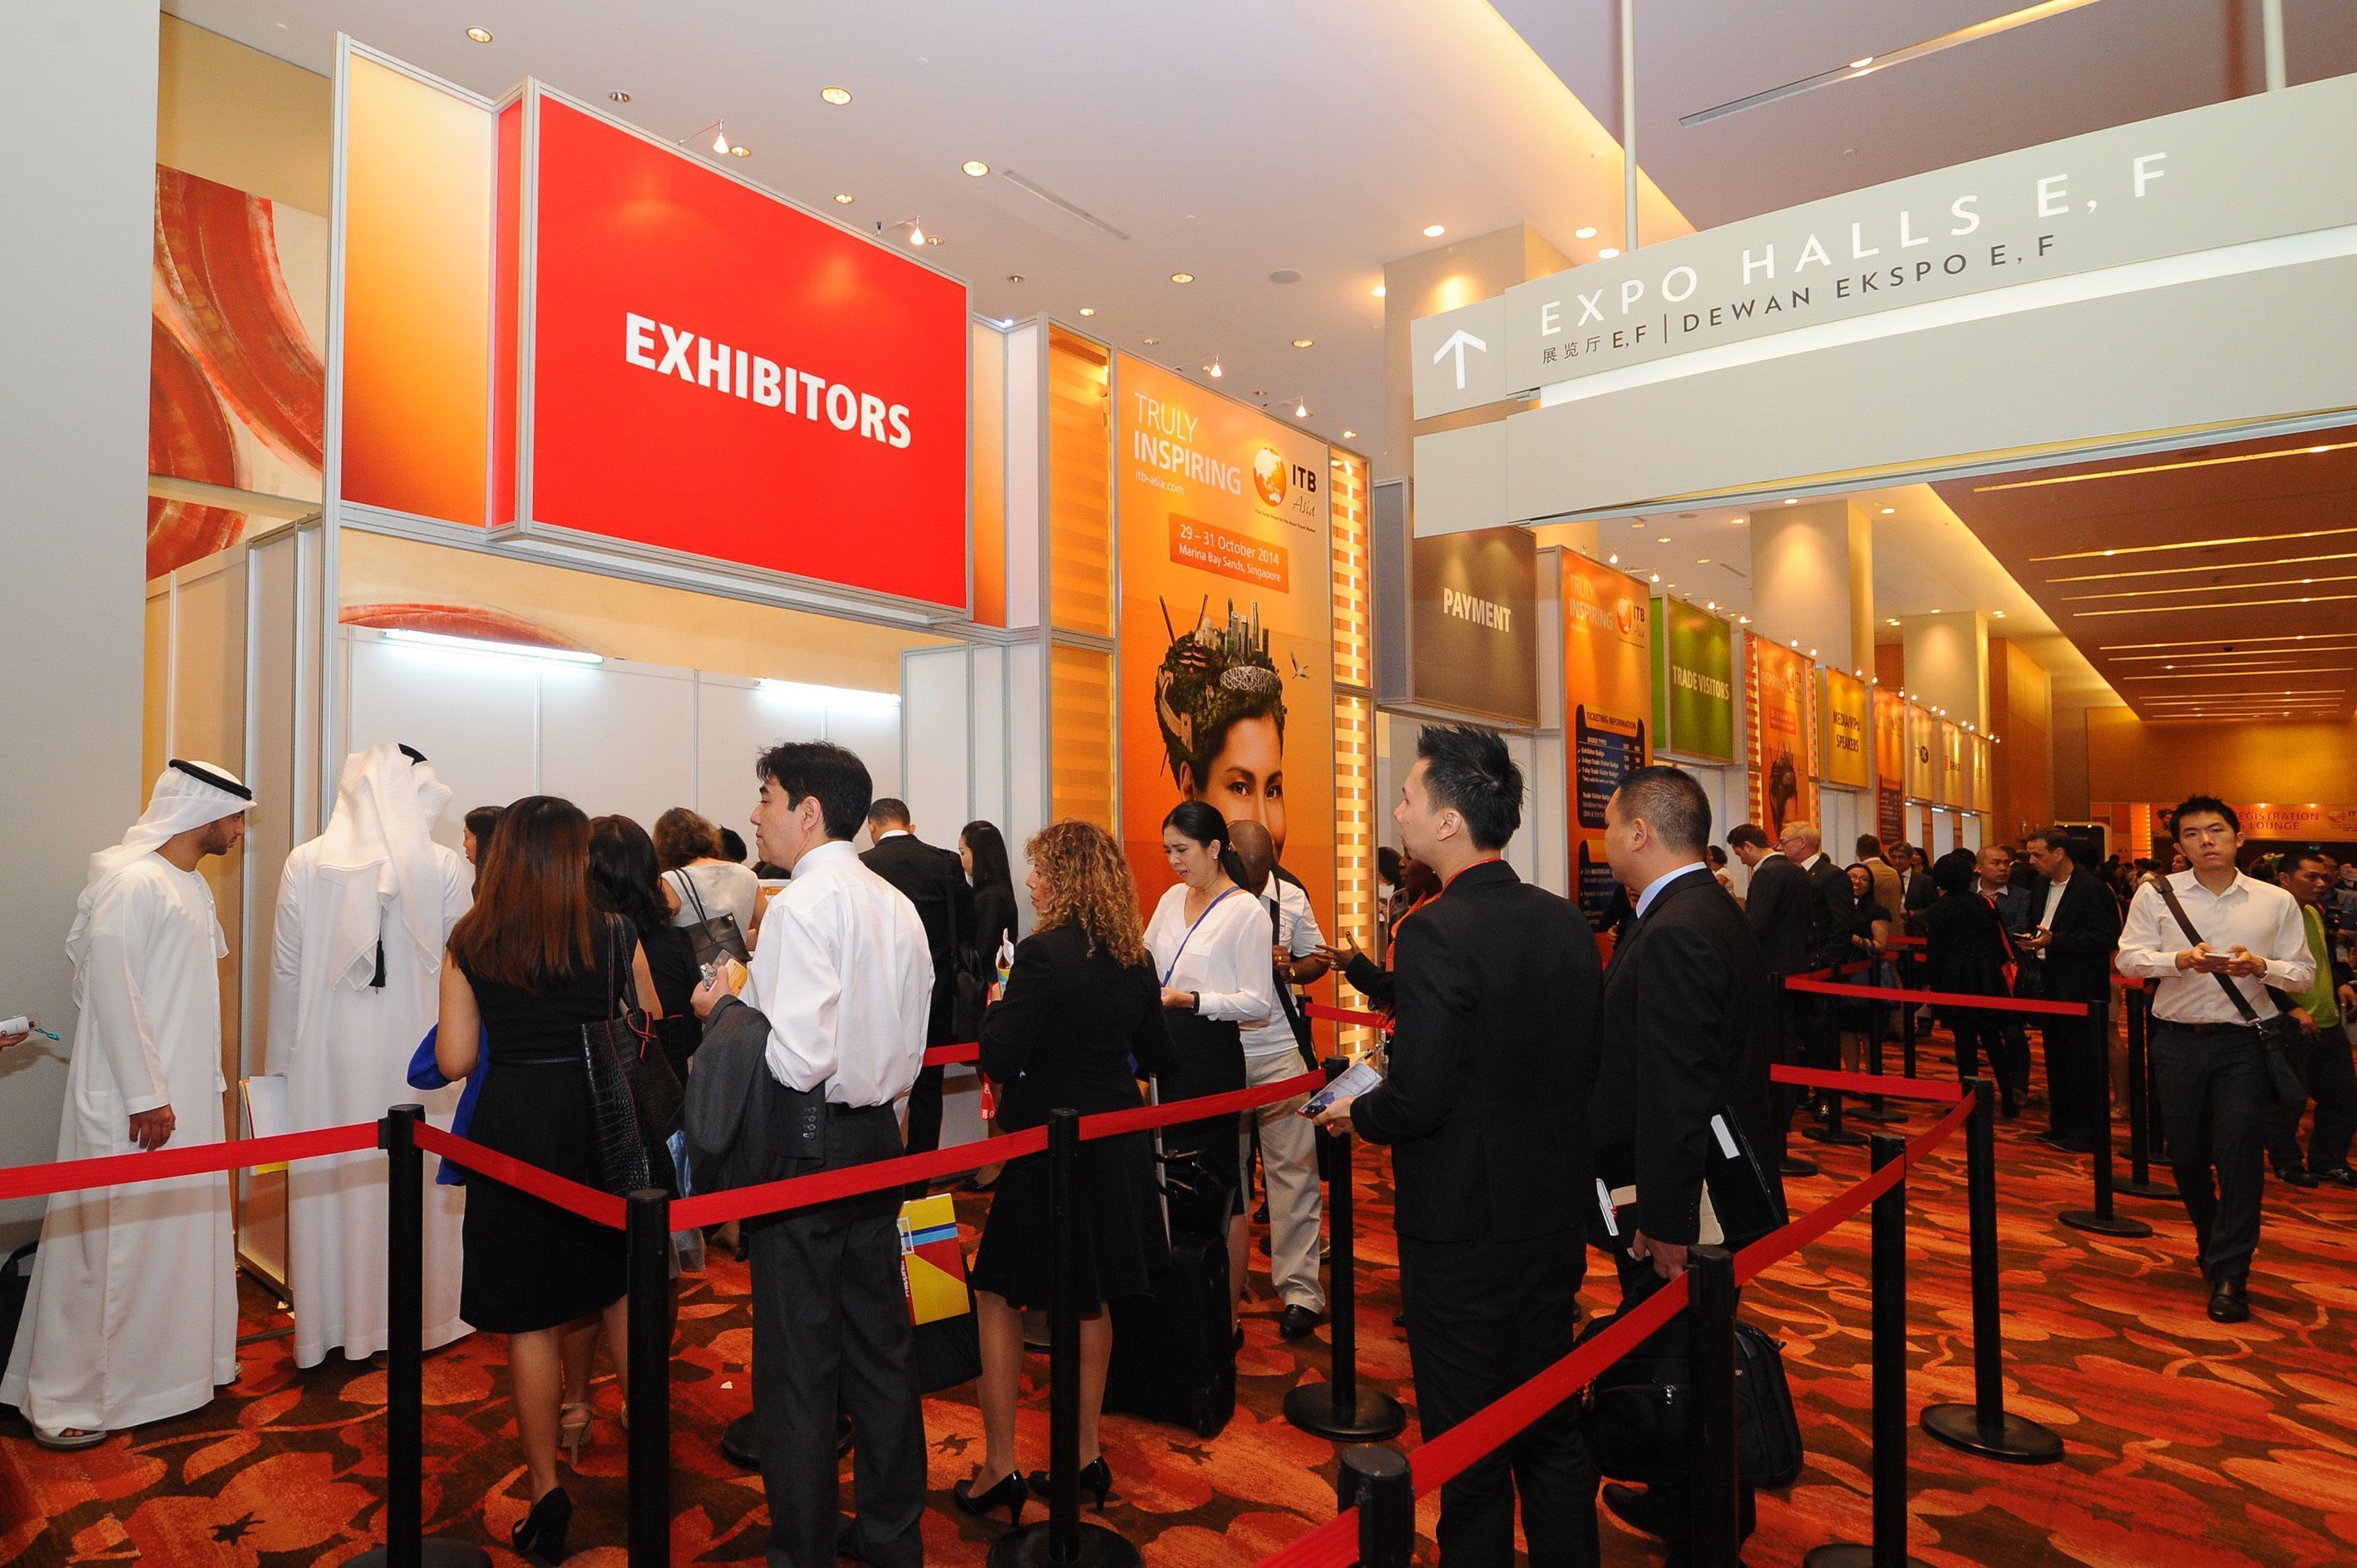 ITB Asia 2014 Exhibitors Registration